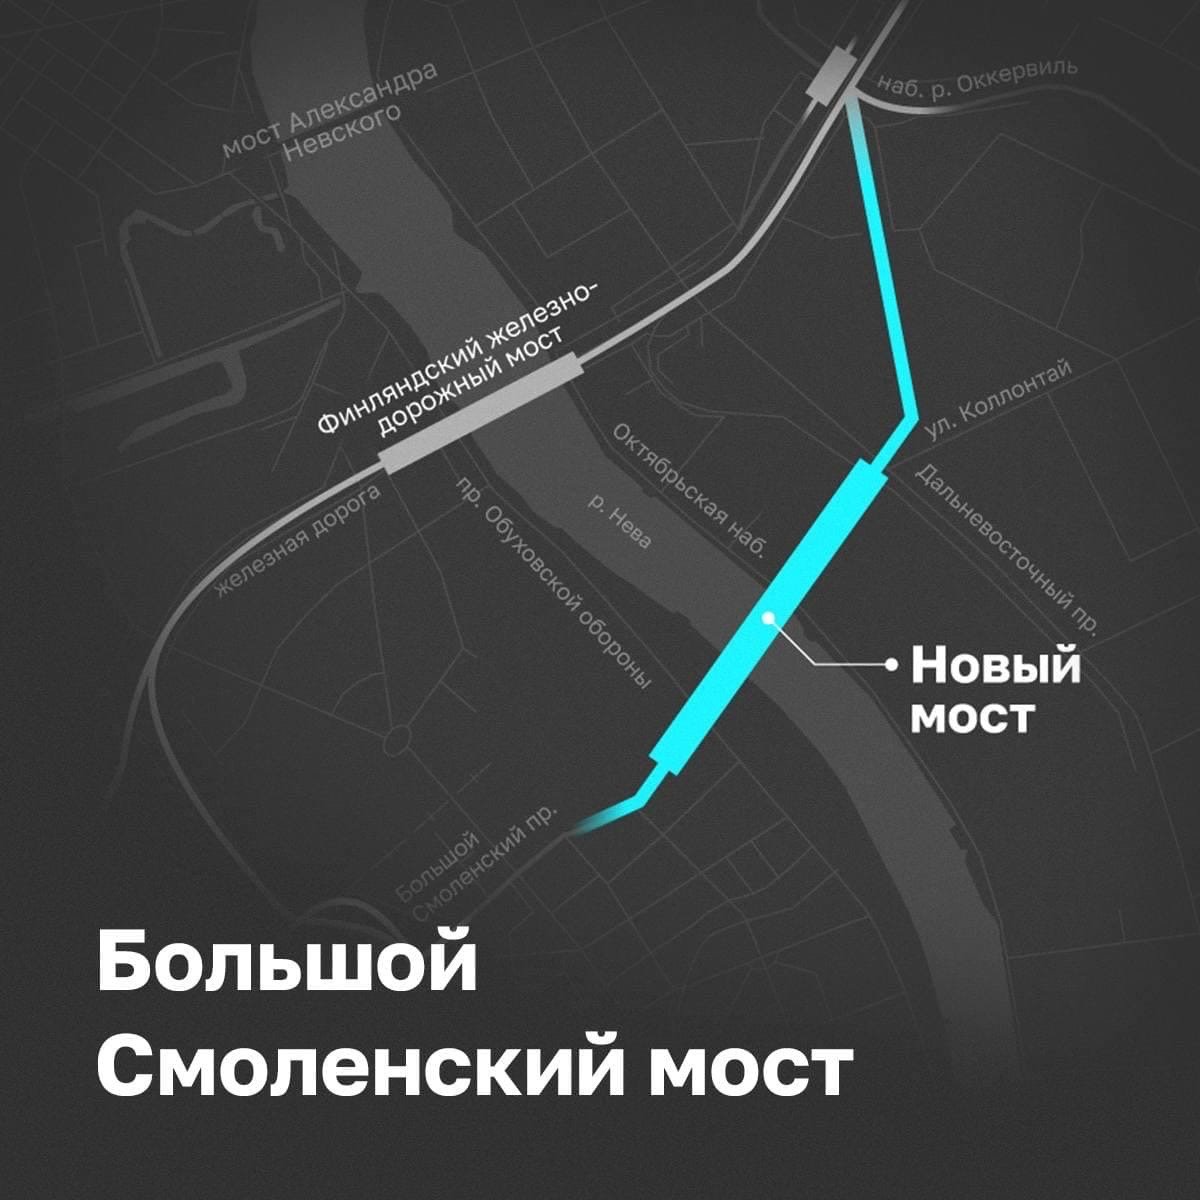 Иллюстрация: Комитет по развитию транспортной инфраструктуры Санкт-Петербурга